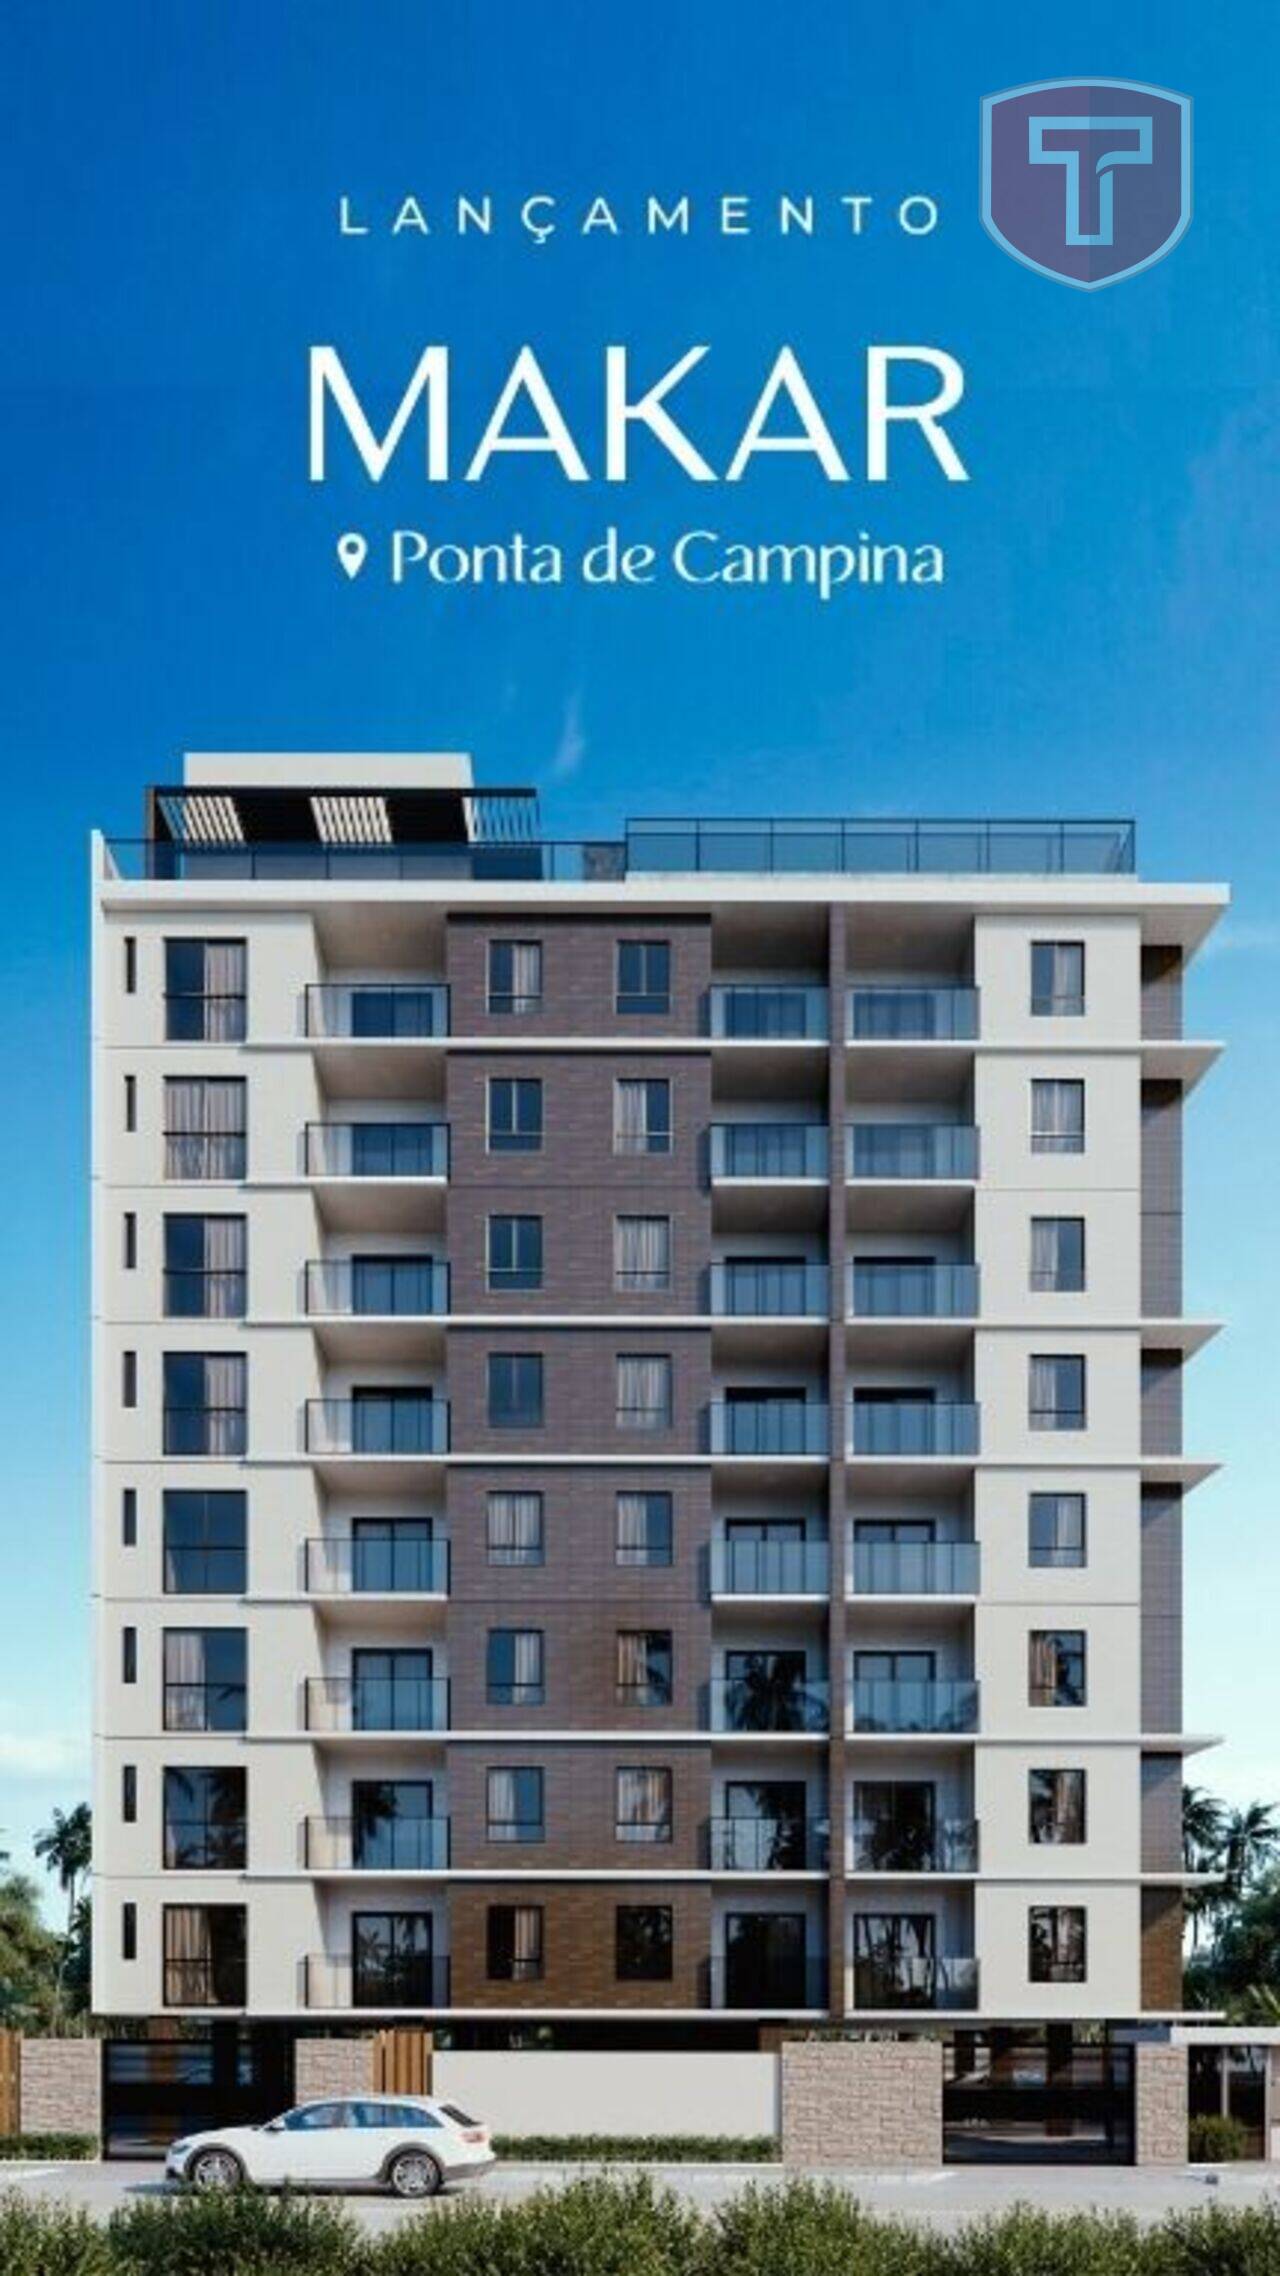 Makar - Apartamento com 3 dormitórios à venda - Ponta de Campina, Cabedelo/PB